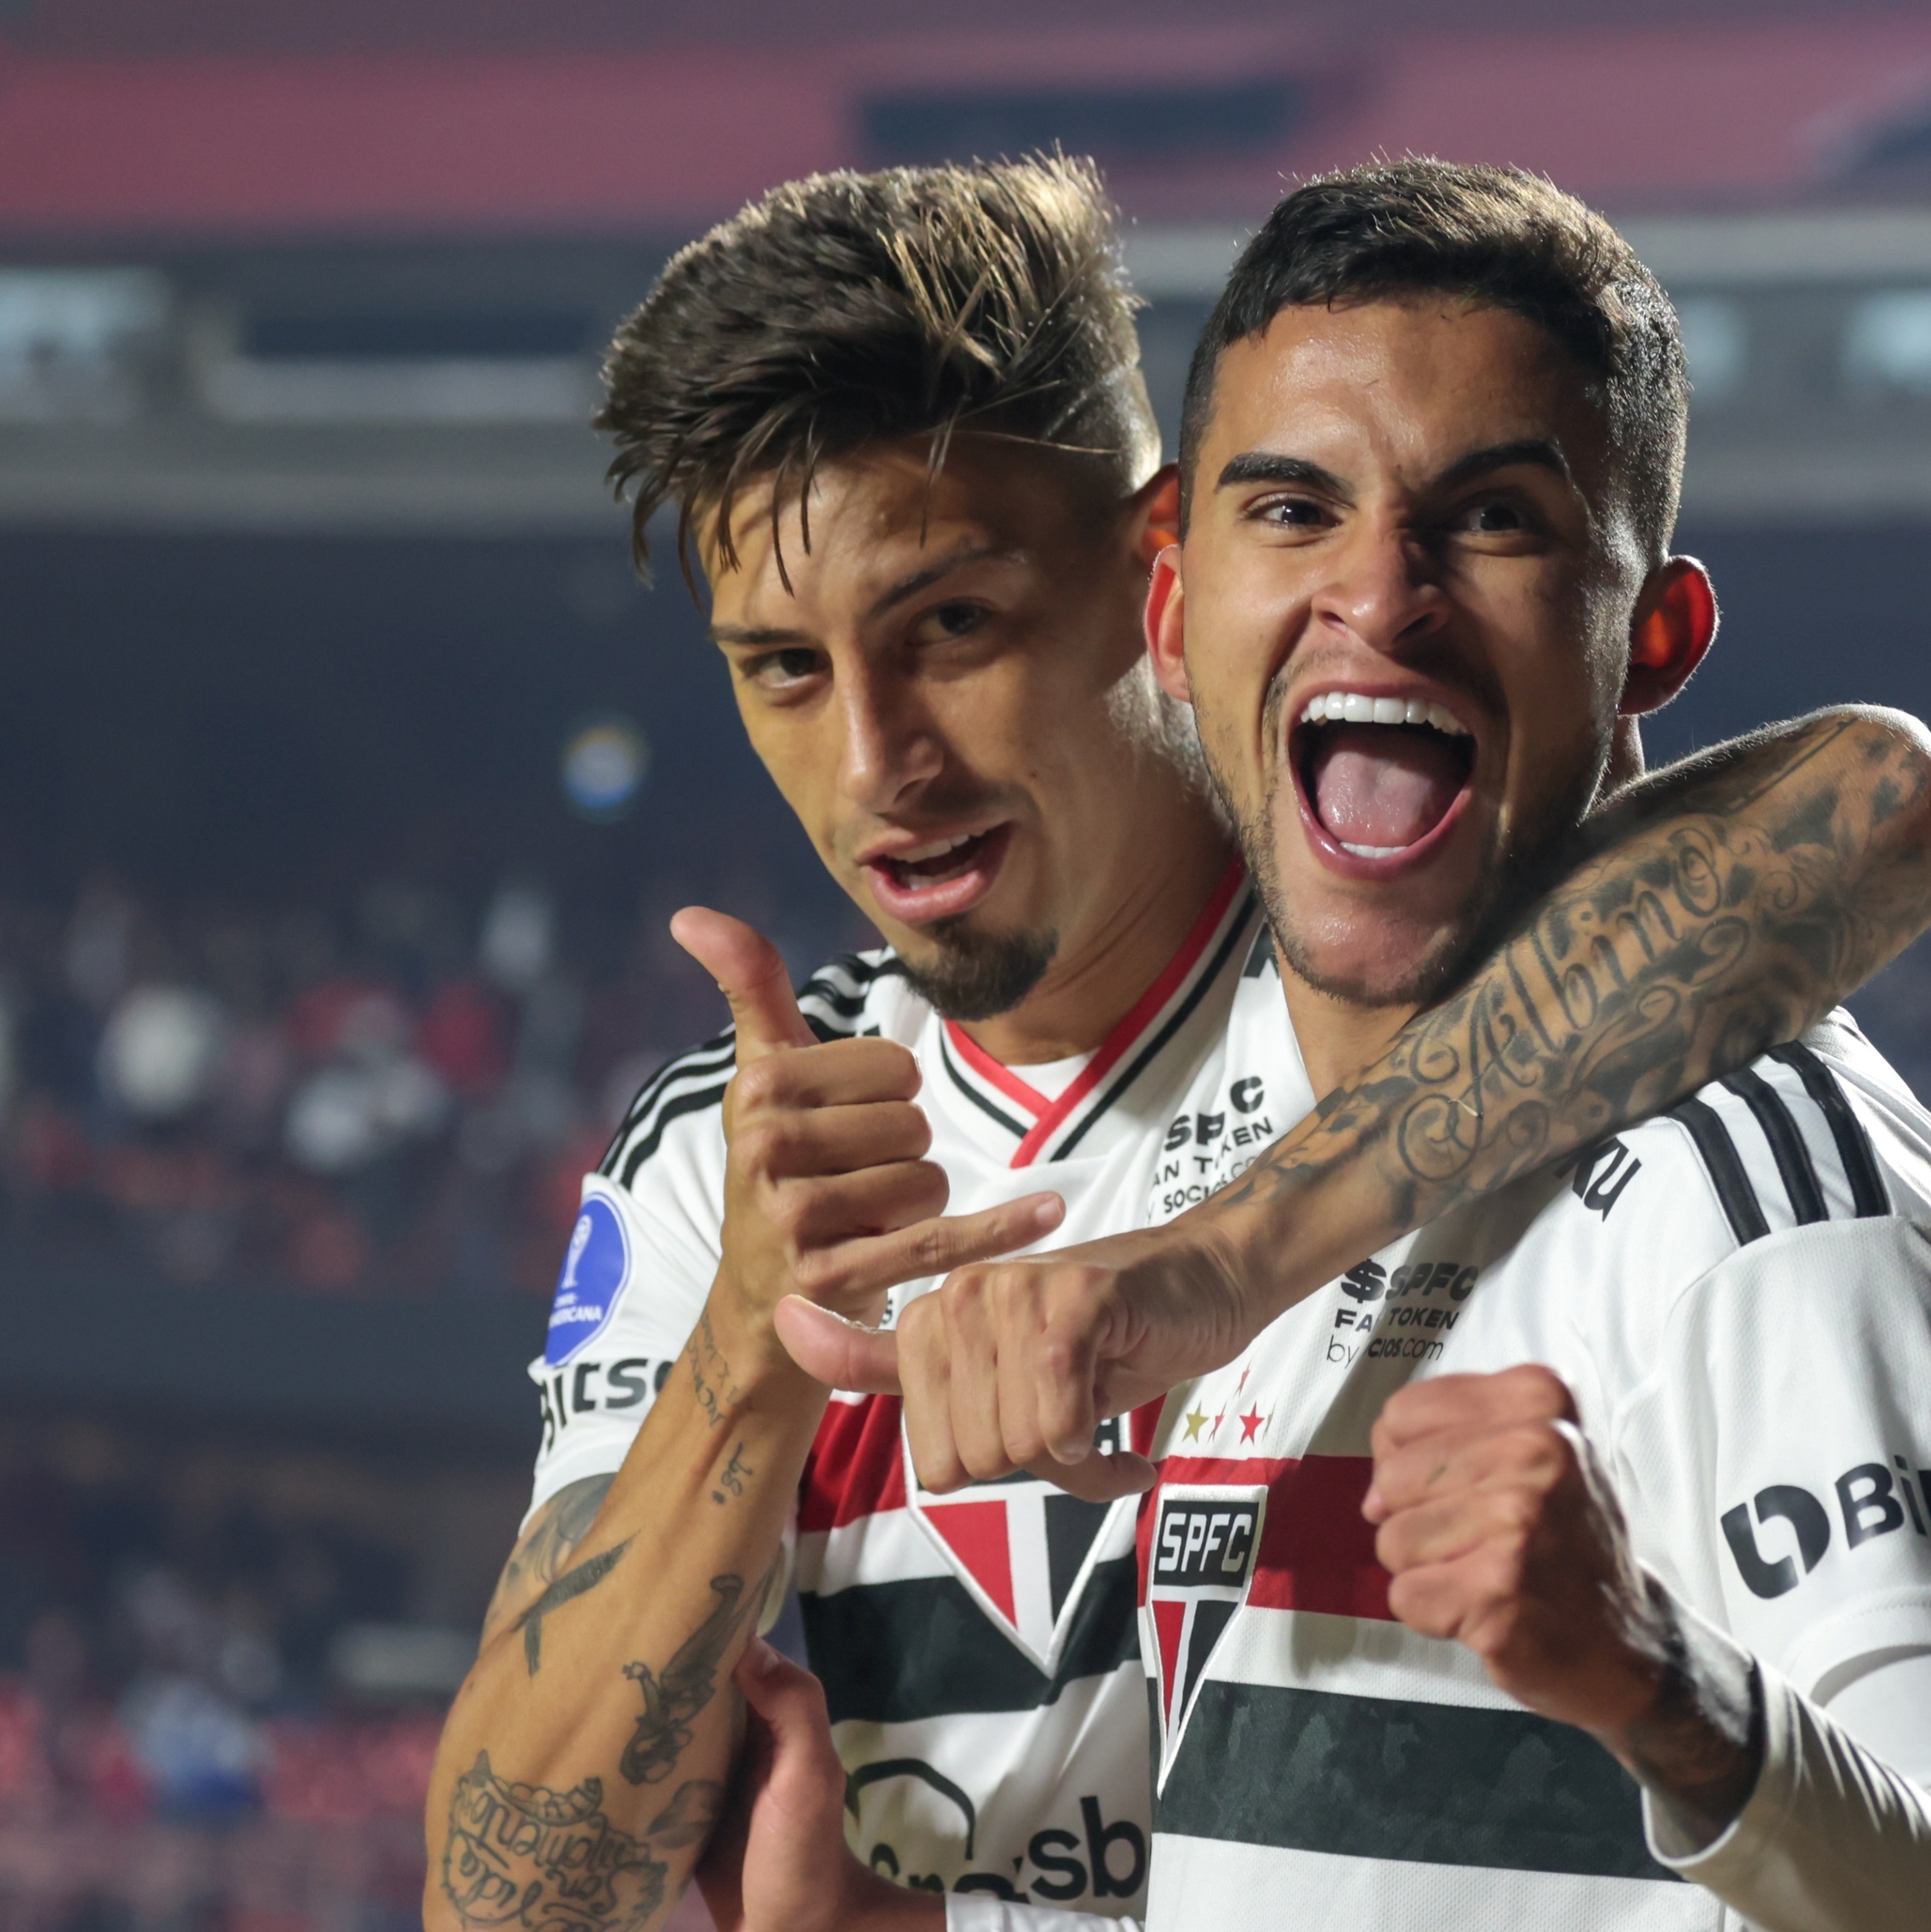 Blog do Guara: Copa Sul-Americana: São Paulo sofre derrota para a